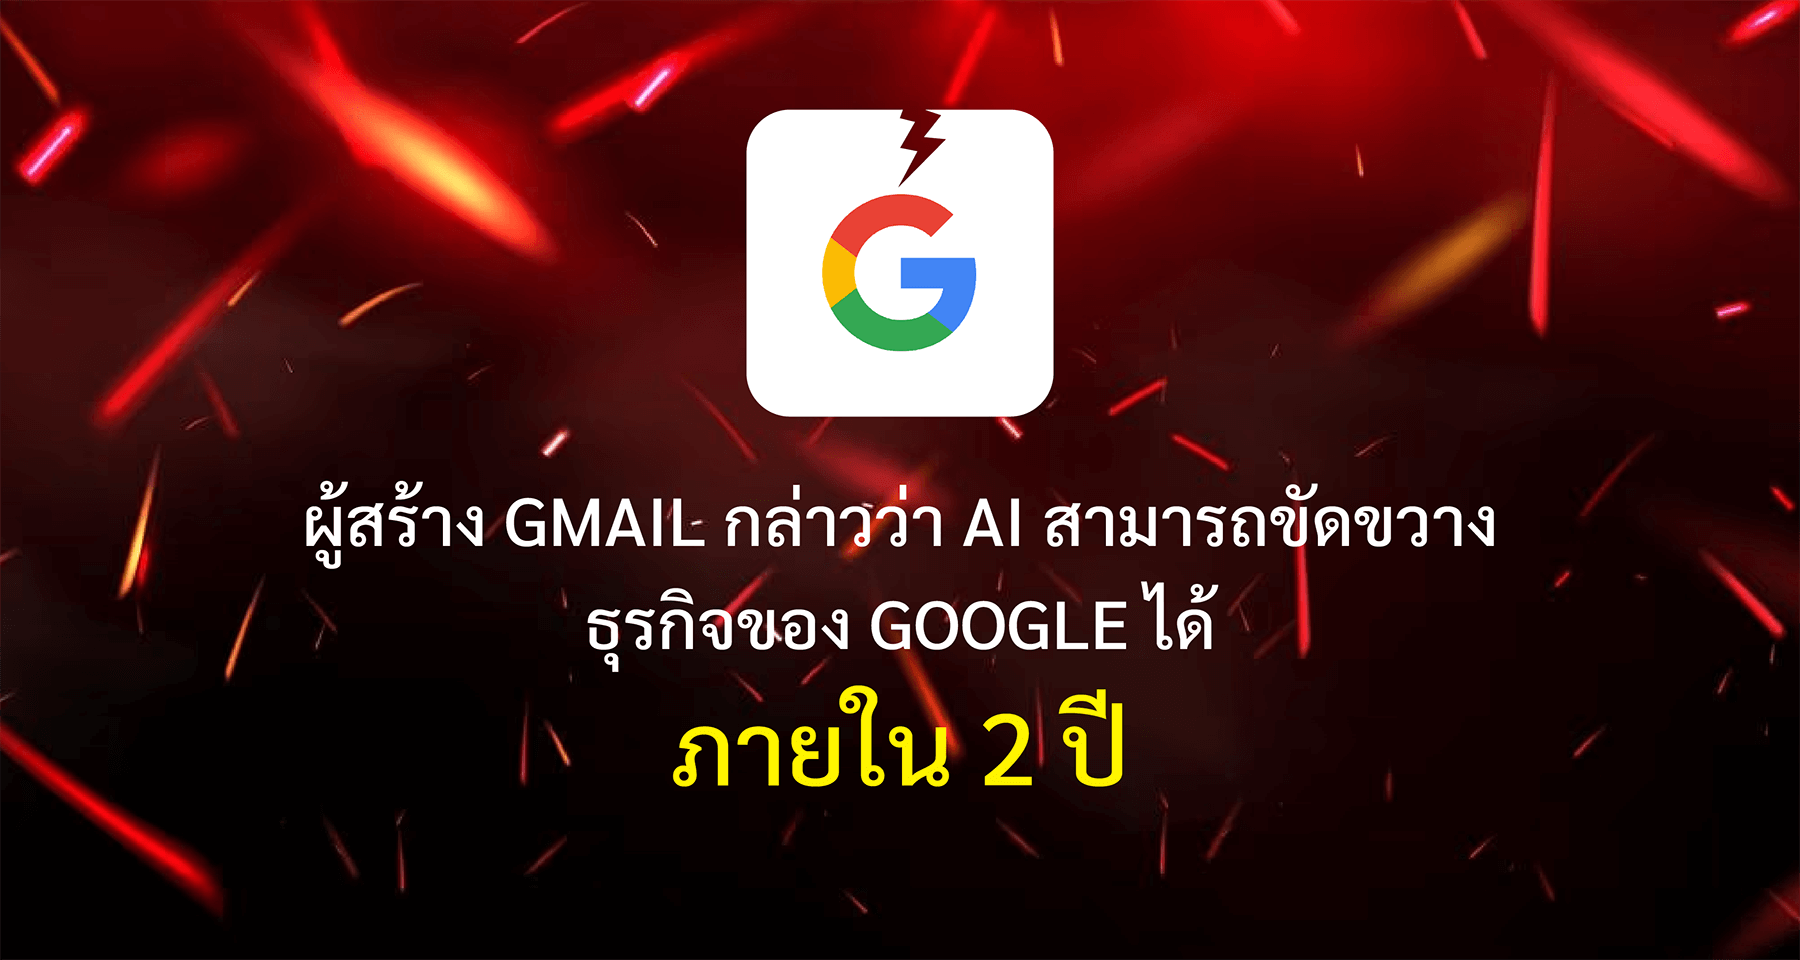 ผู้สร้าง Gmail กล่าวว่า AI สามารถขัดขวางธุรกิจของ Google ได้ภายใน 2 ปี